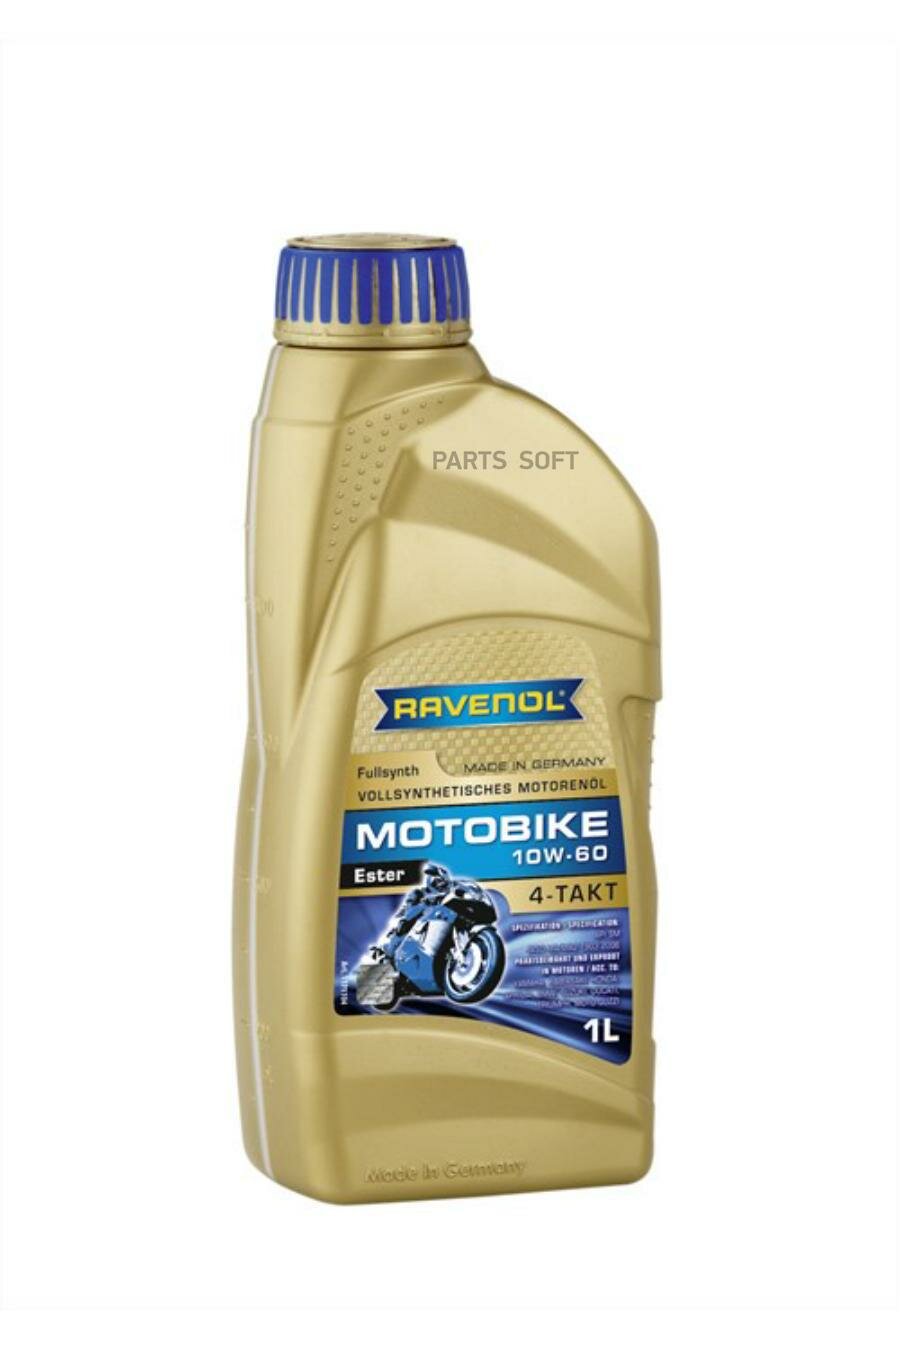 моторное масло ravenol motobike 4-t ester sae 10w-60 (1л) new